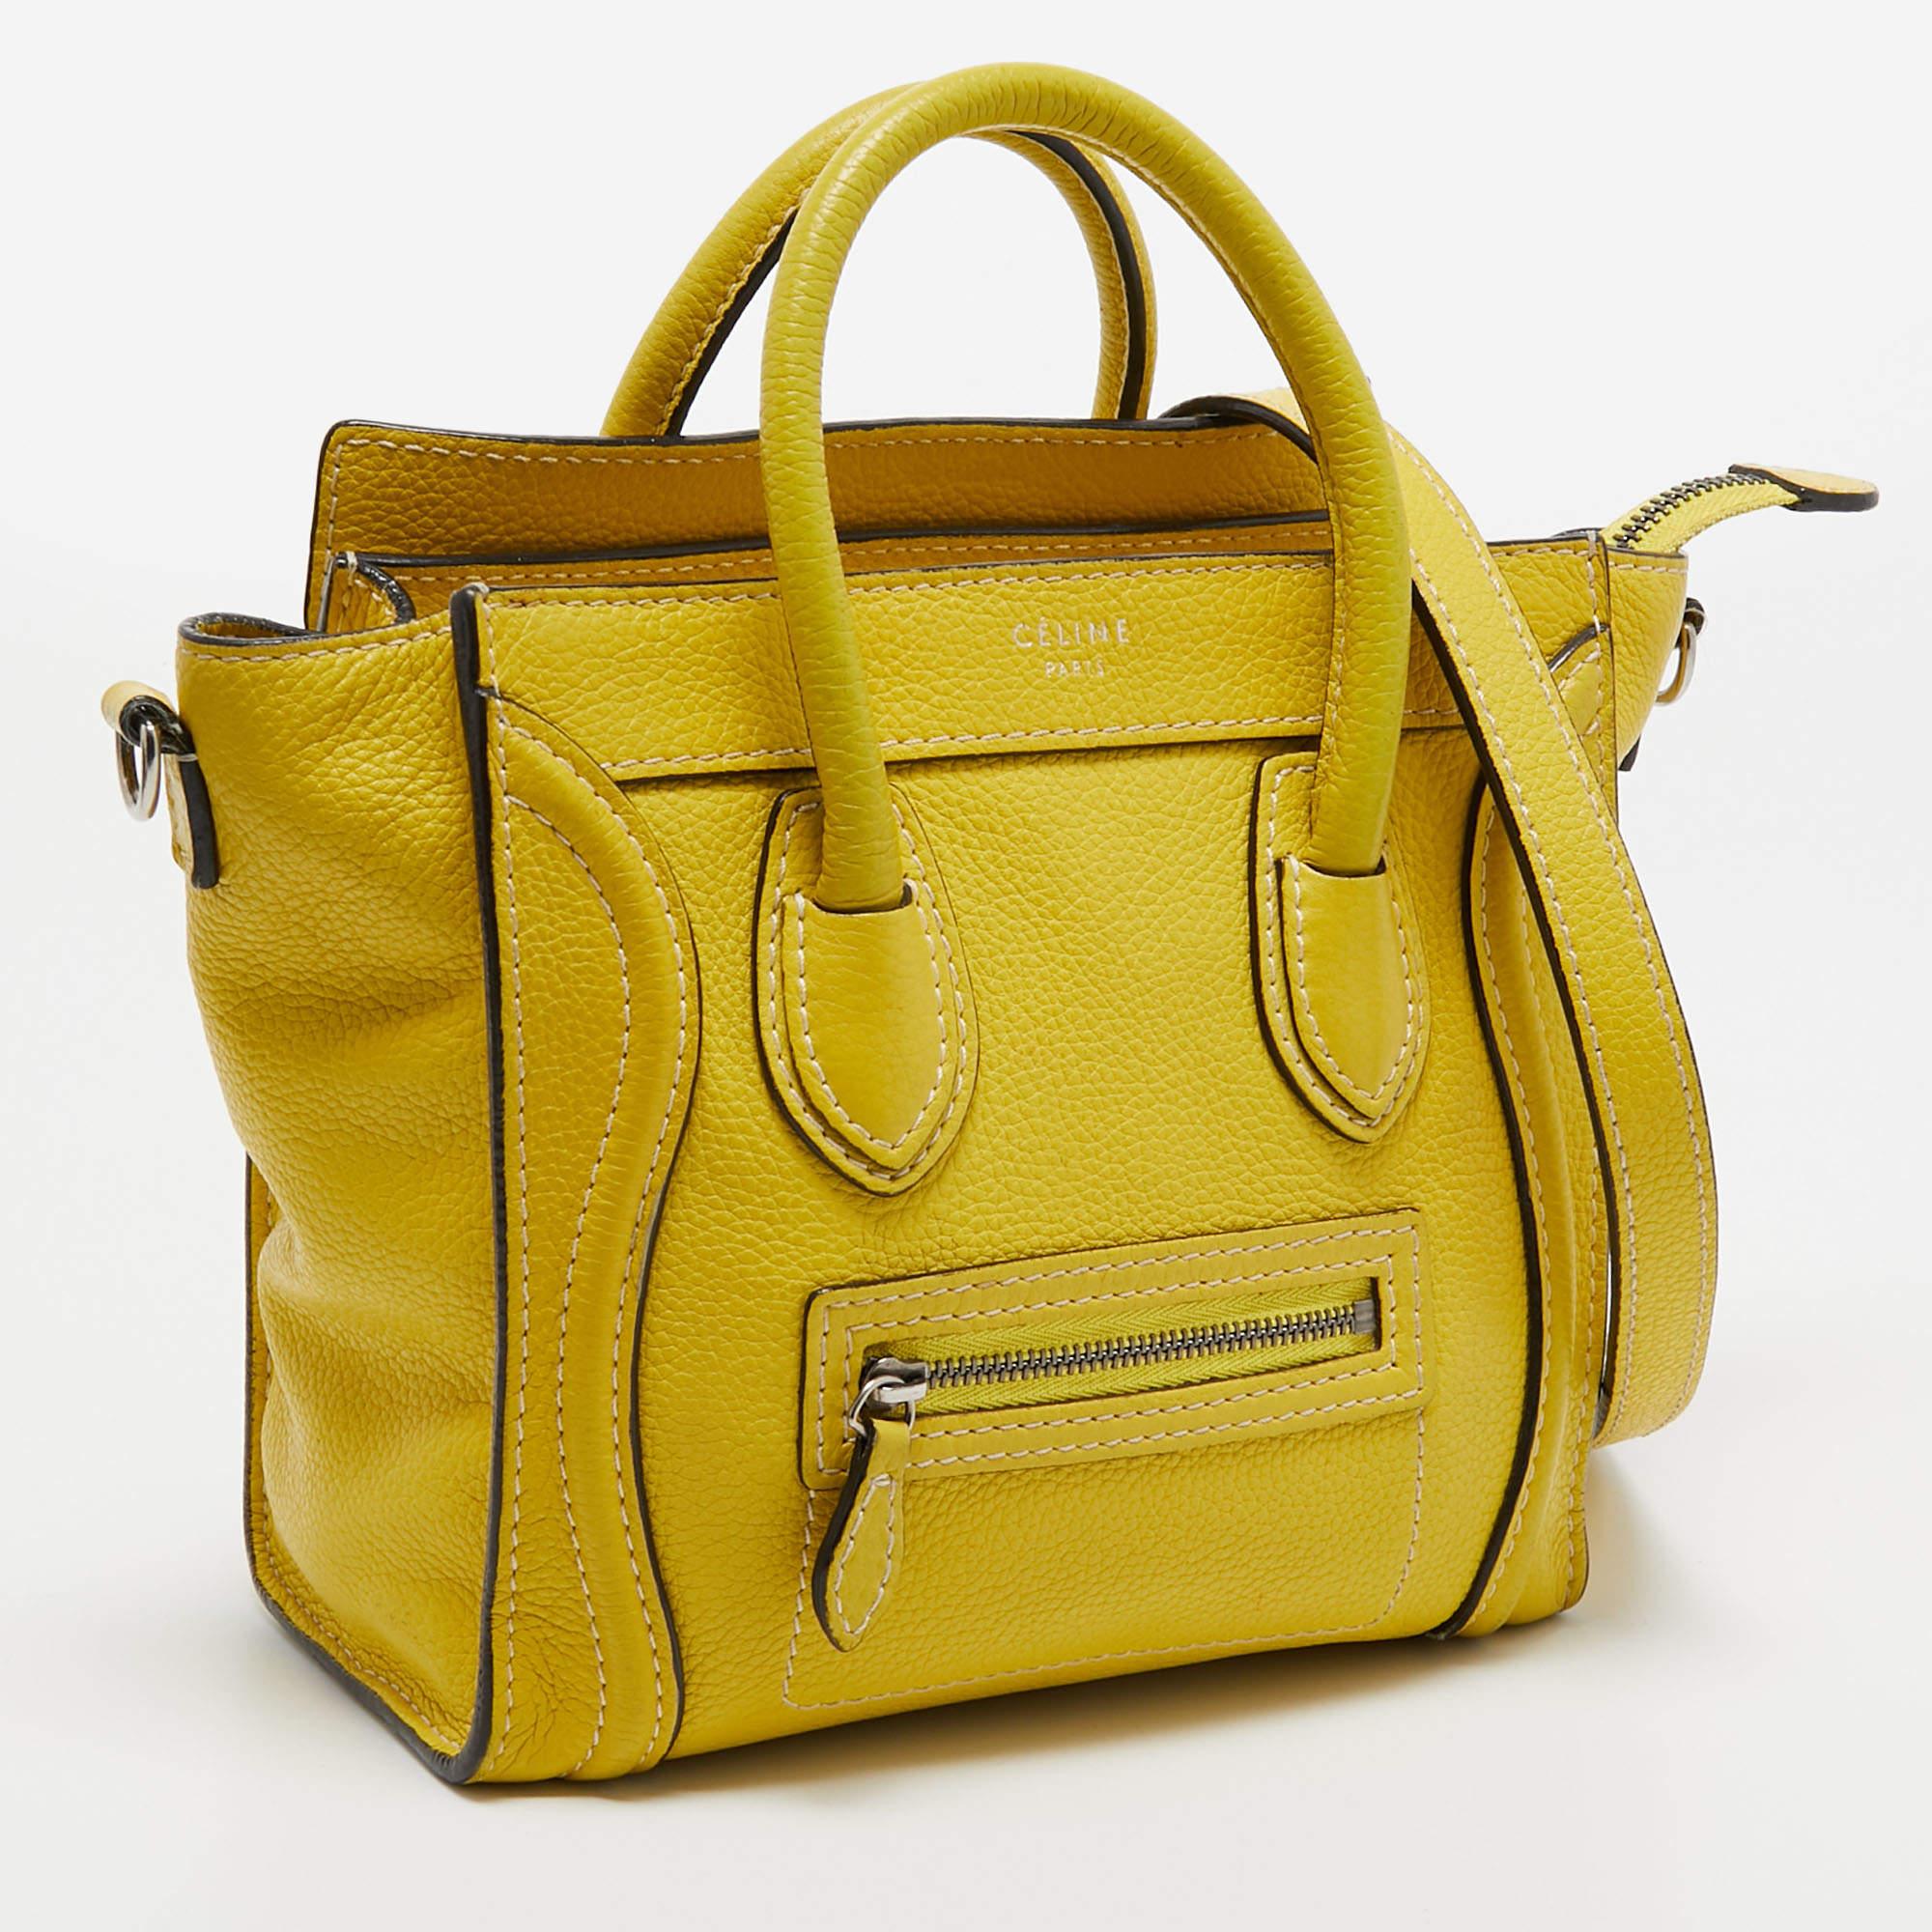 Céline Yellow Leather Nano Luggage Tote In Good Condition For Sale In Dubai, Al Qouz 2